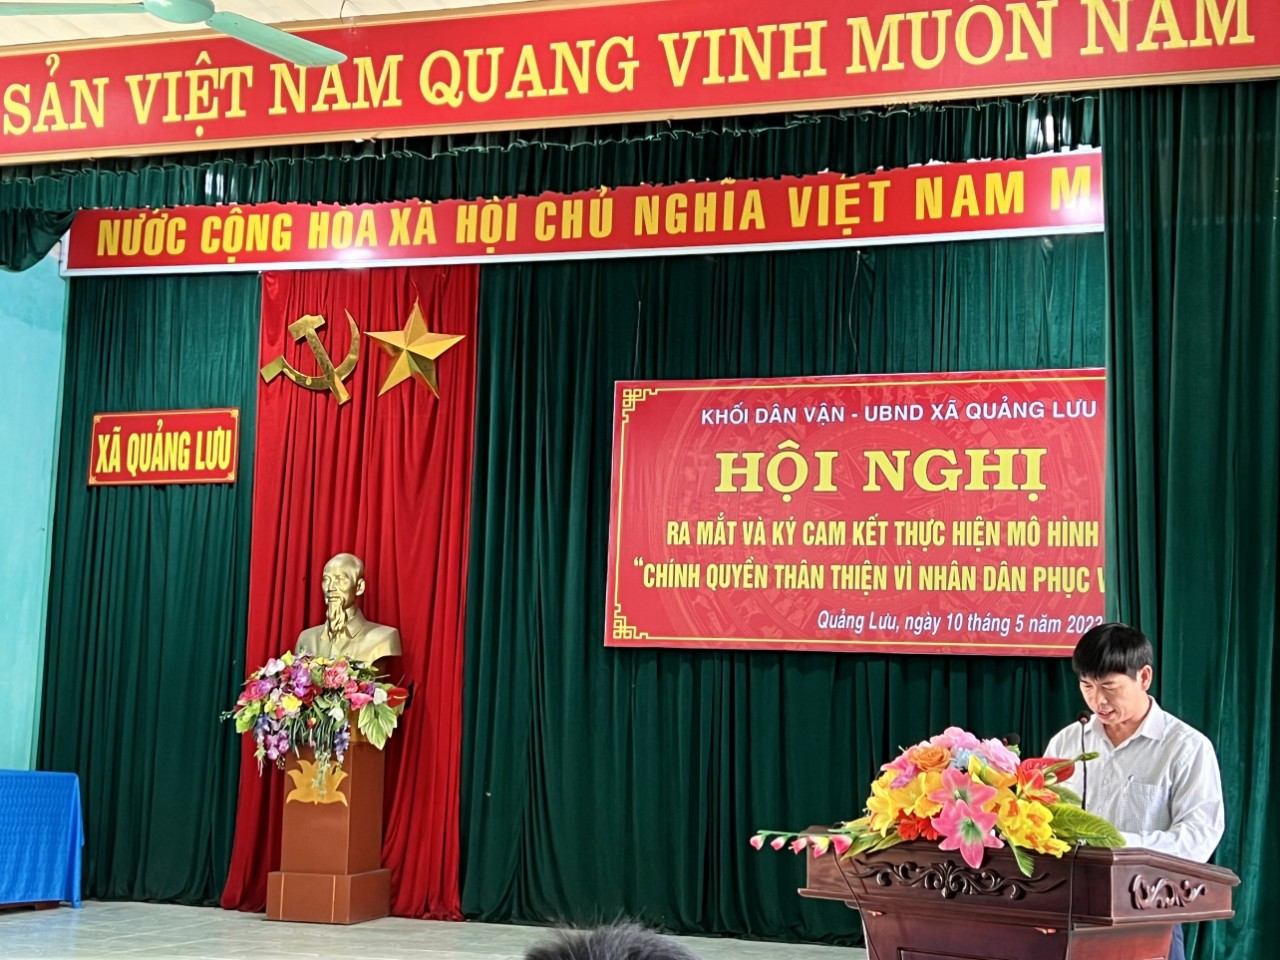 Xã Quảng Lưu tổ chức hội nghị ra mắt mô hình “Chính quyền thân thiện, vì Nhân dân phục vụ” năm 2023